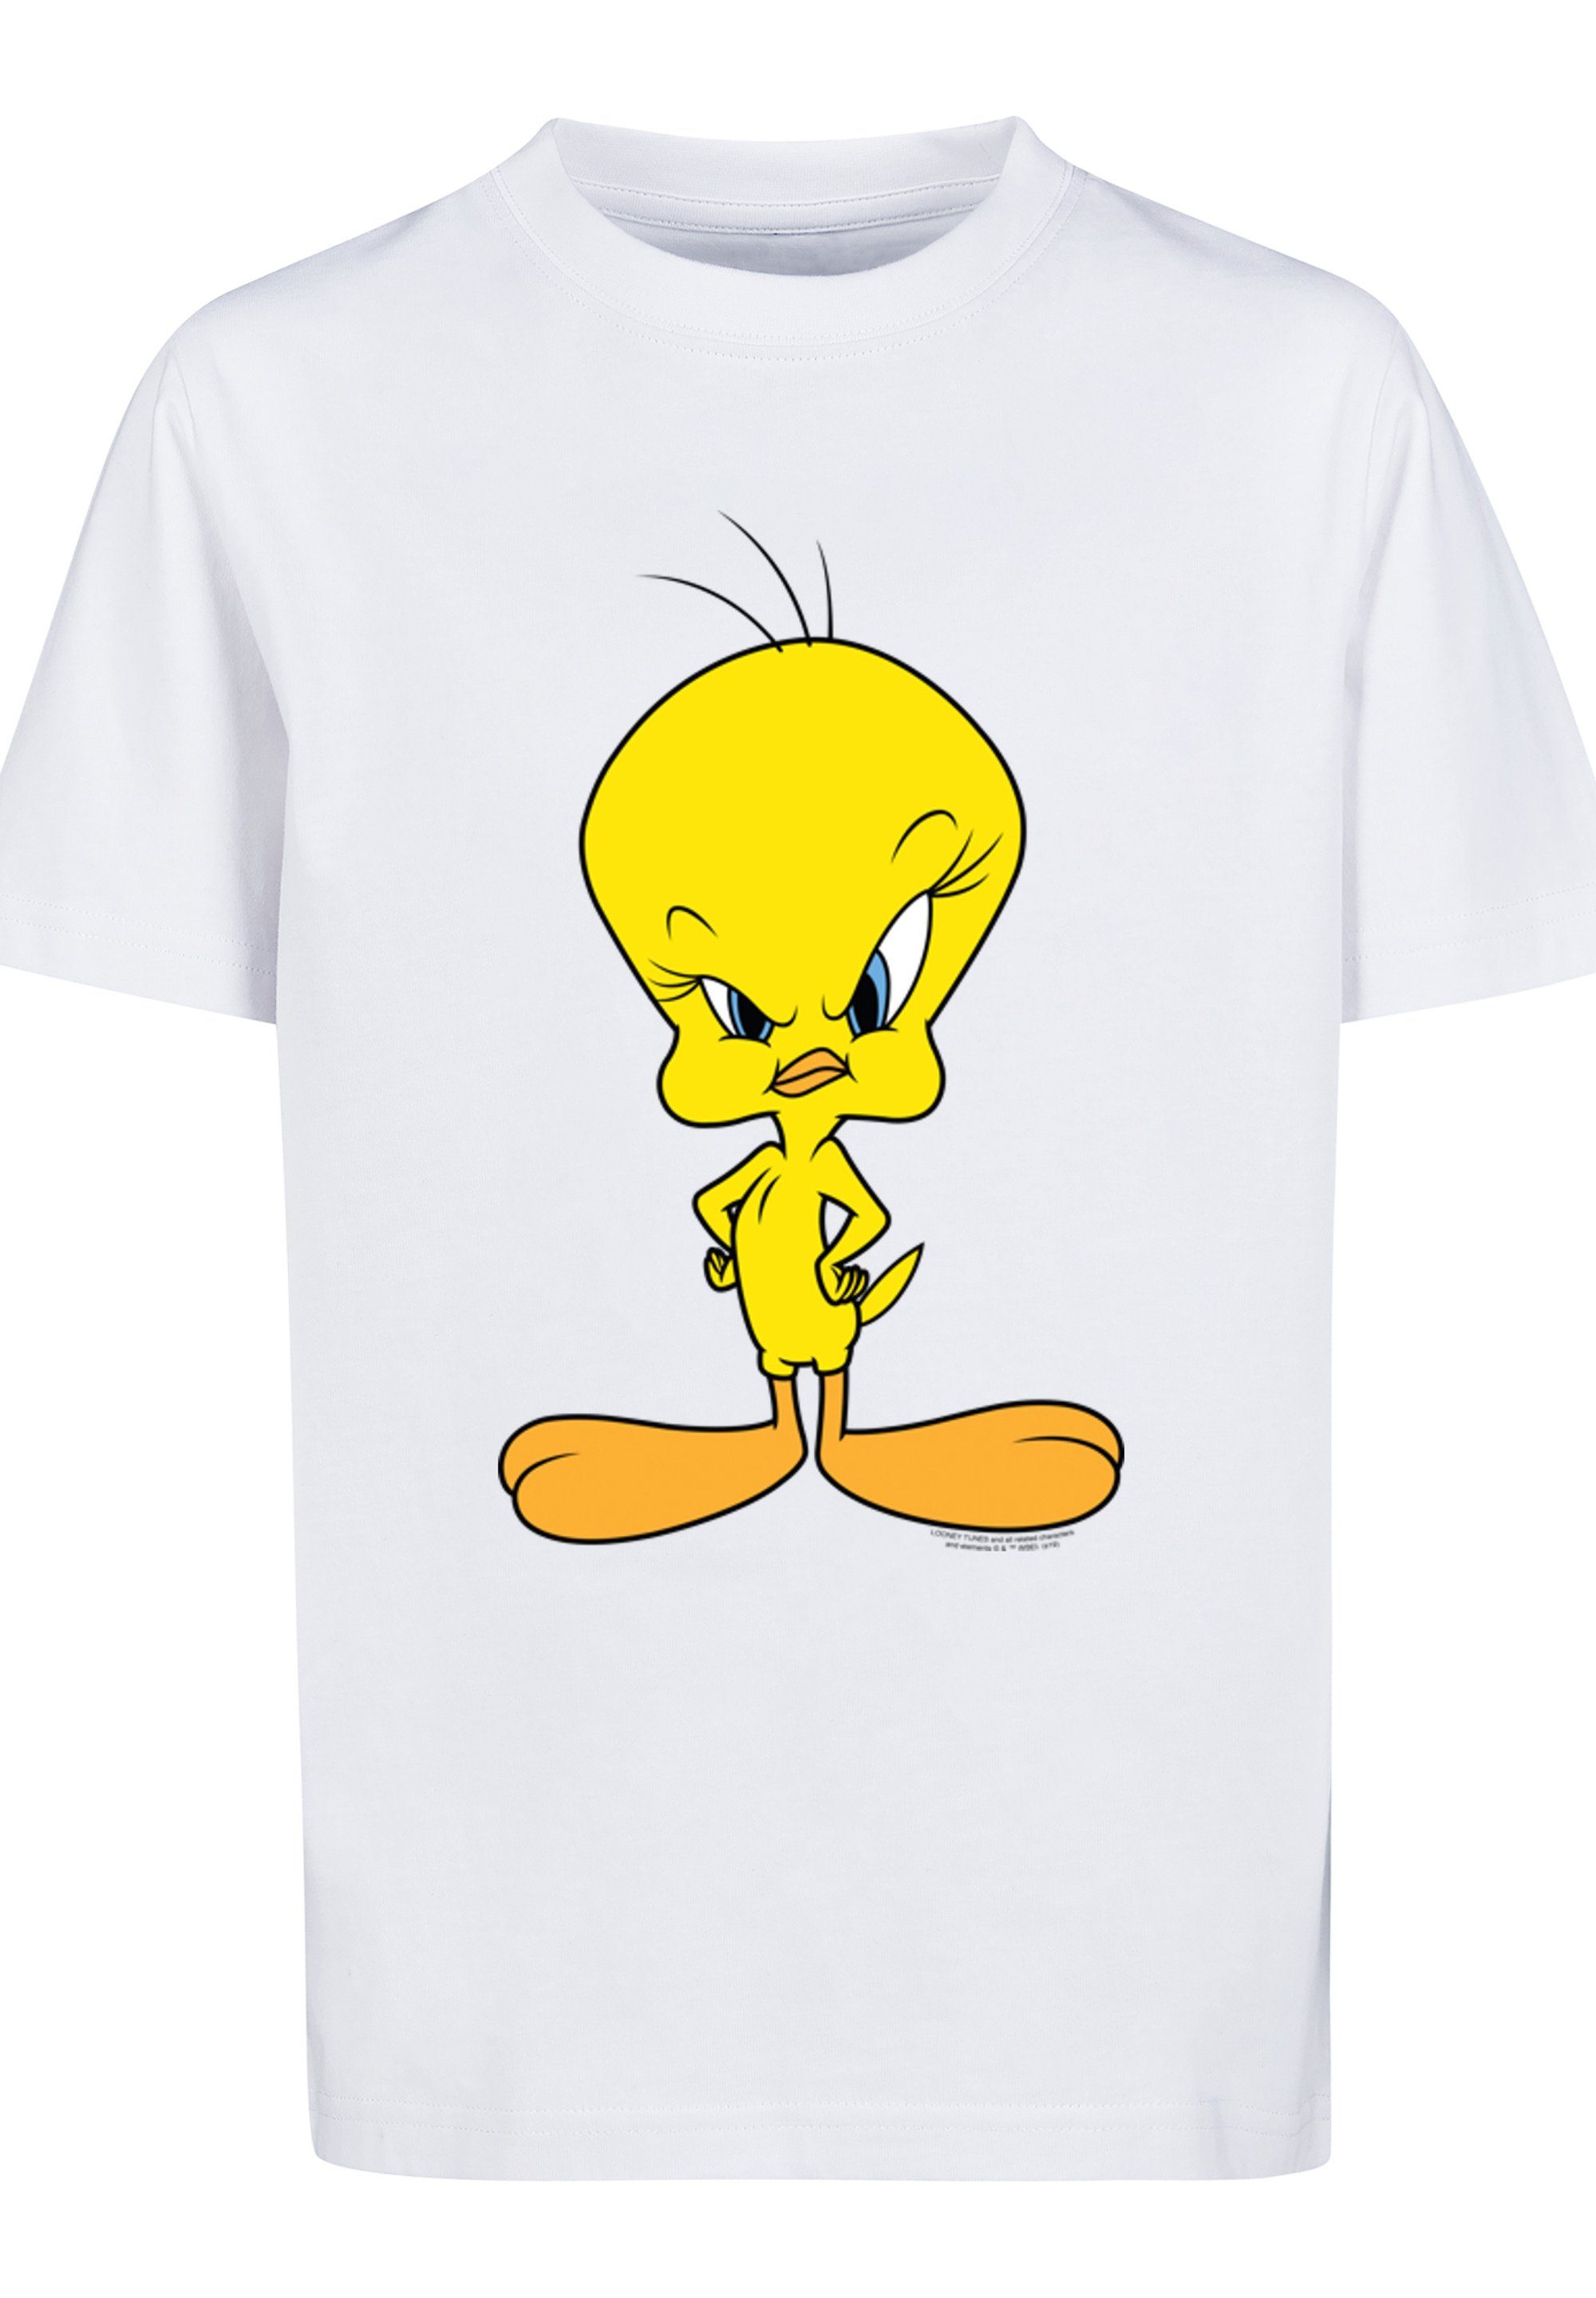 Tunes Merch,Jungen,Mädchen,Bedruckt Tweety F4NT4STIC Kinder,Premium Unisex T-Shirt Angry Looney